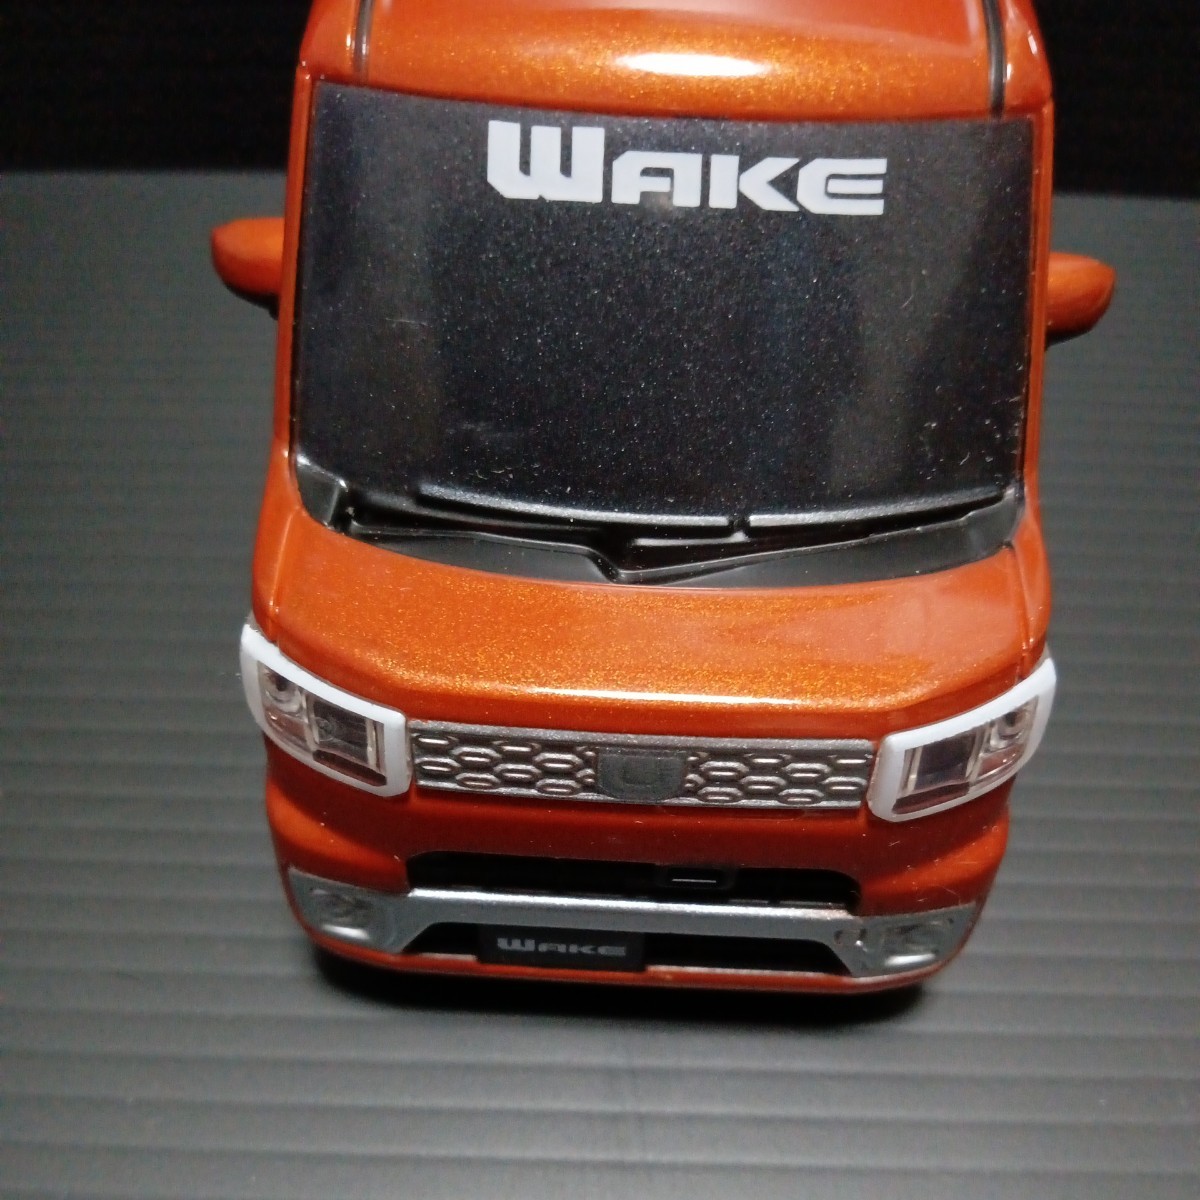 ● プルバックカー「DAIHATSU ウェイク」WAKE オレンジ系 ミニカー プルバック